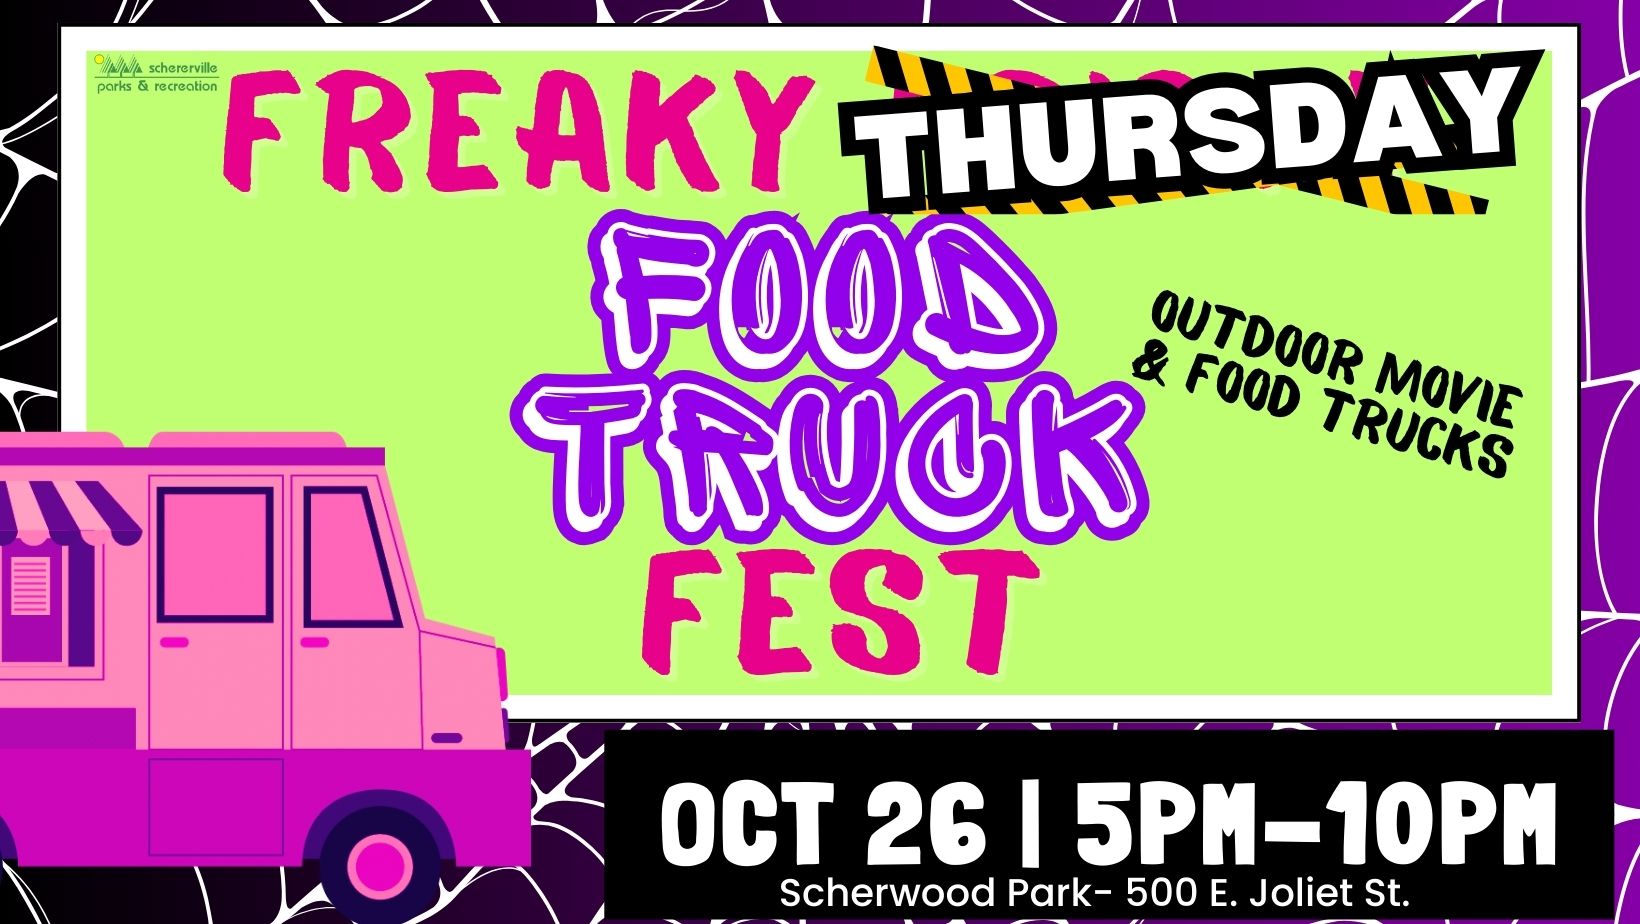 Schererville's Freaky THURSDSAY Food Truck Fest